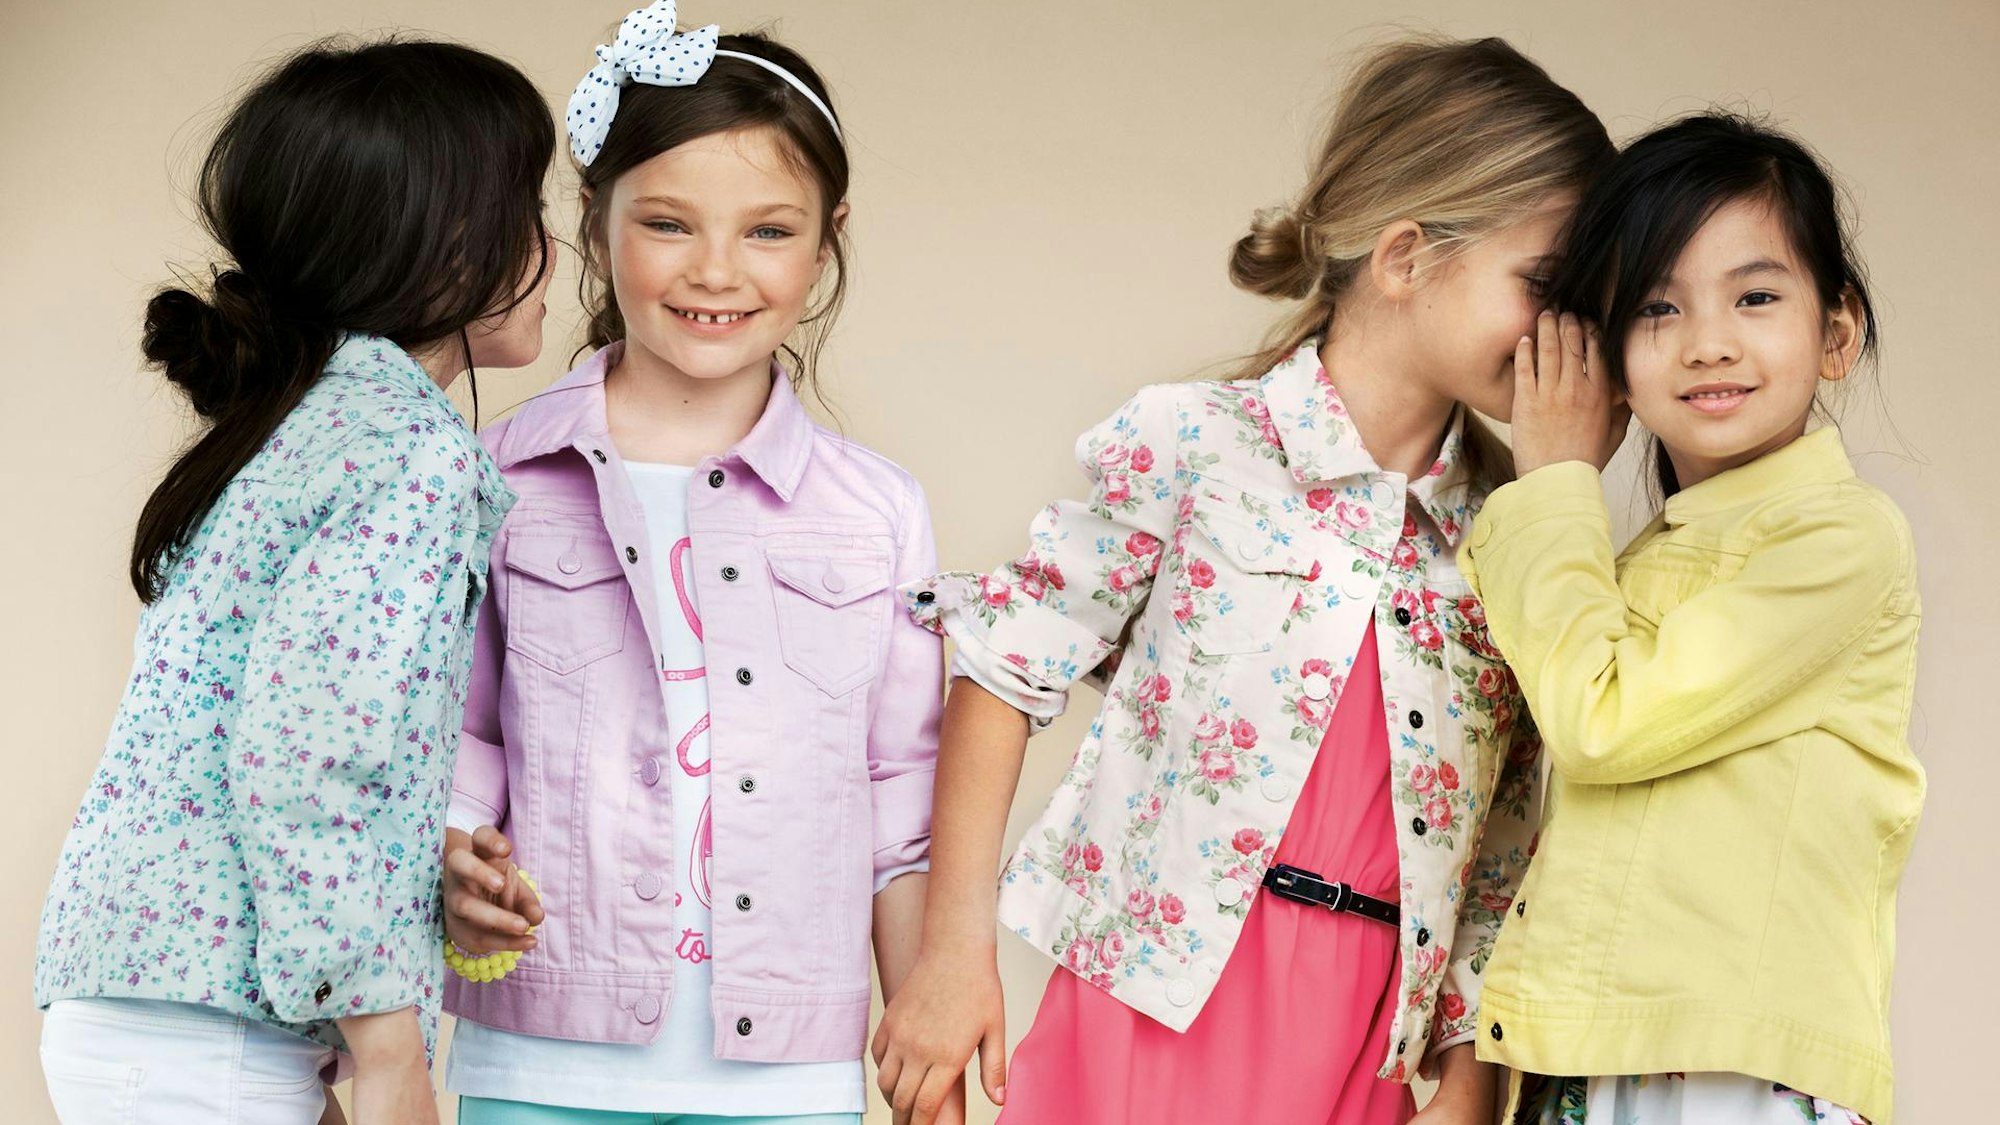 Benetton Werbebild mit vier kleinen Mädchen, die sich etwas zuflüstern